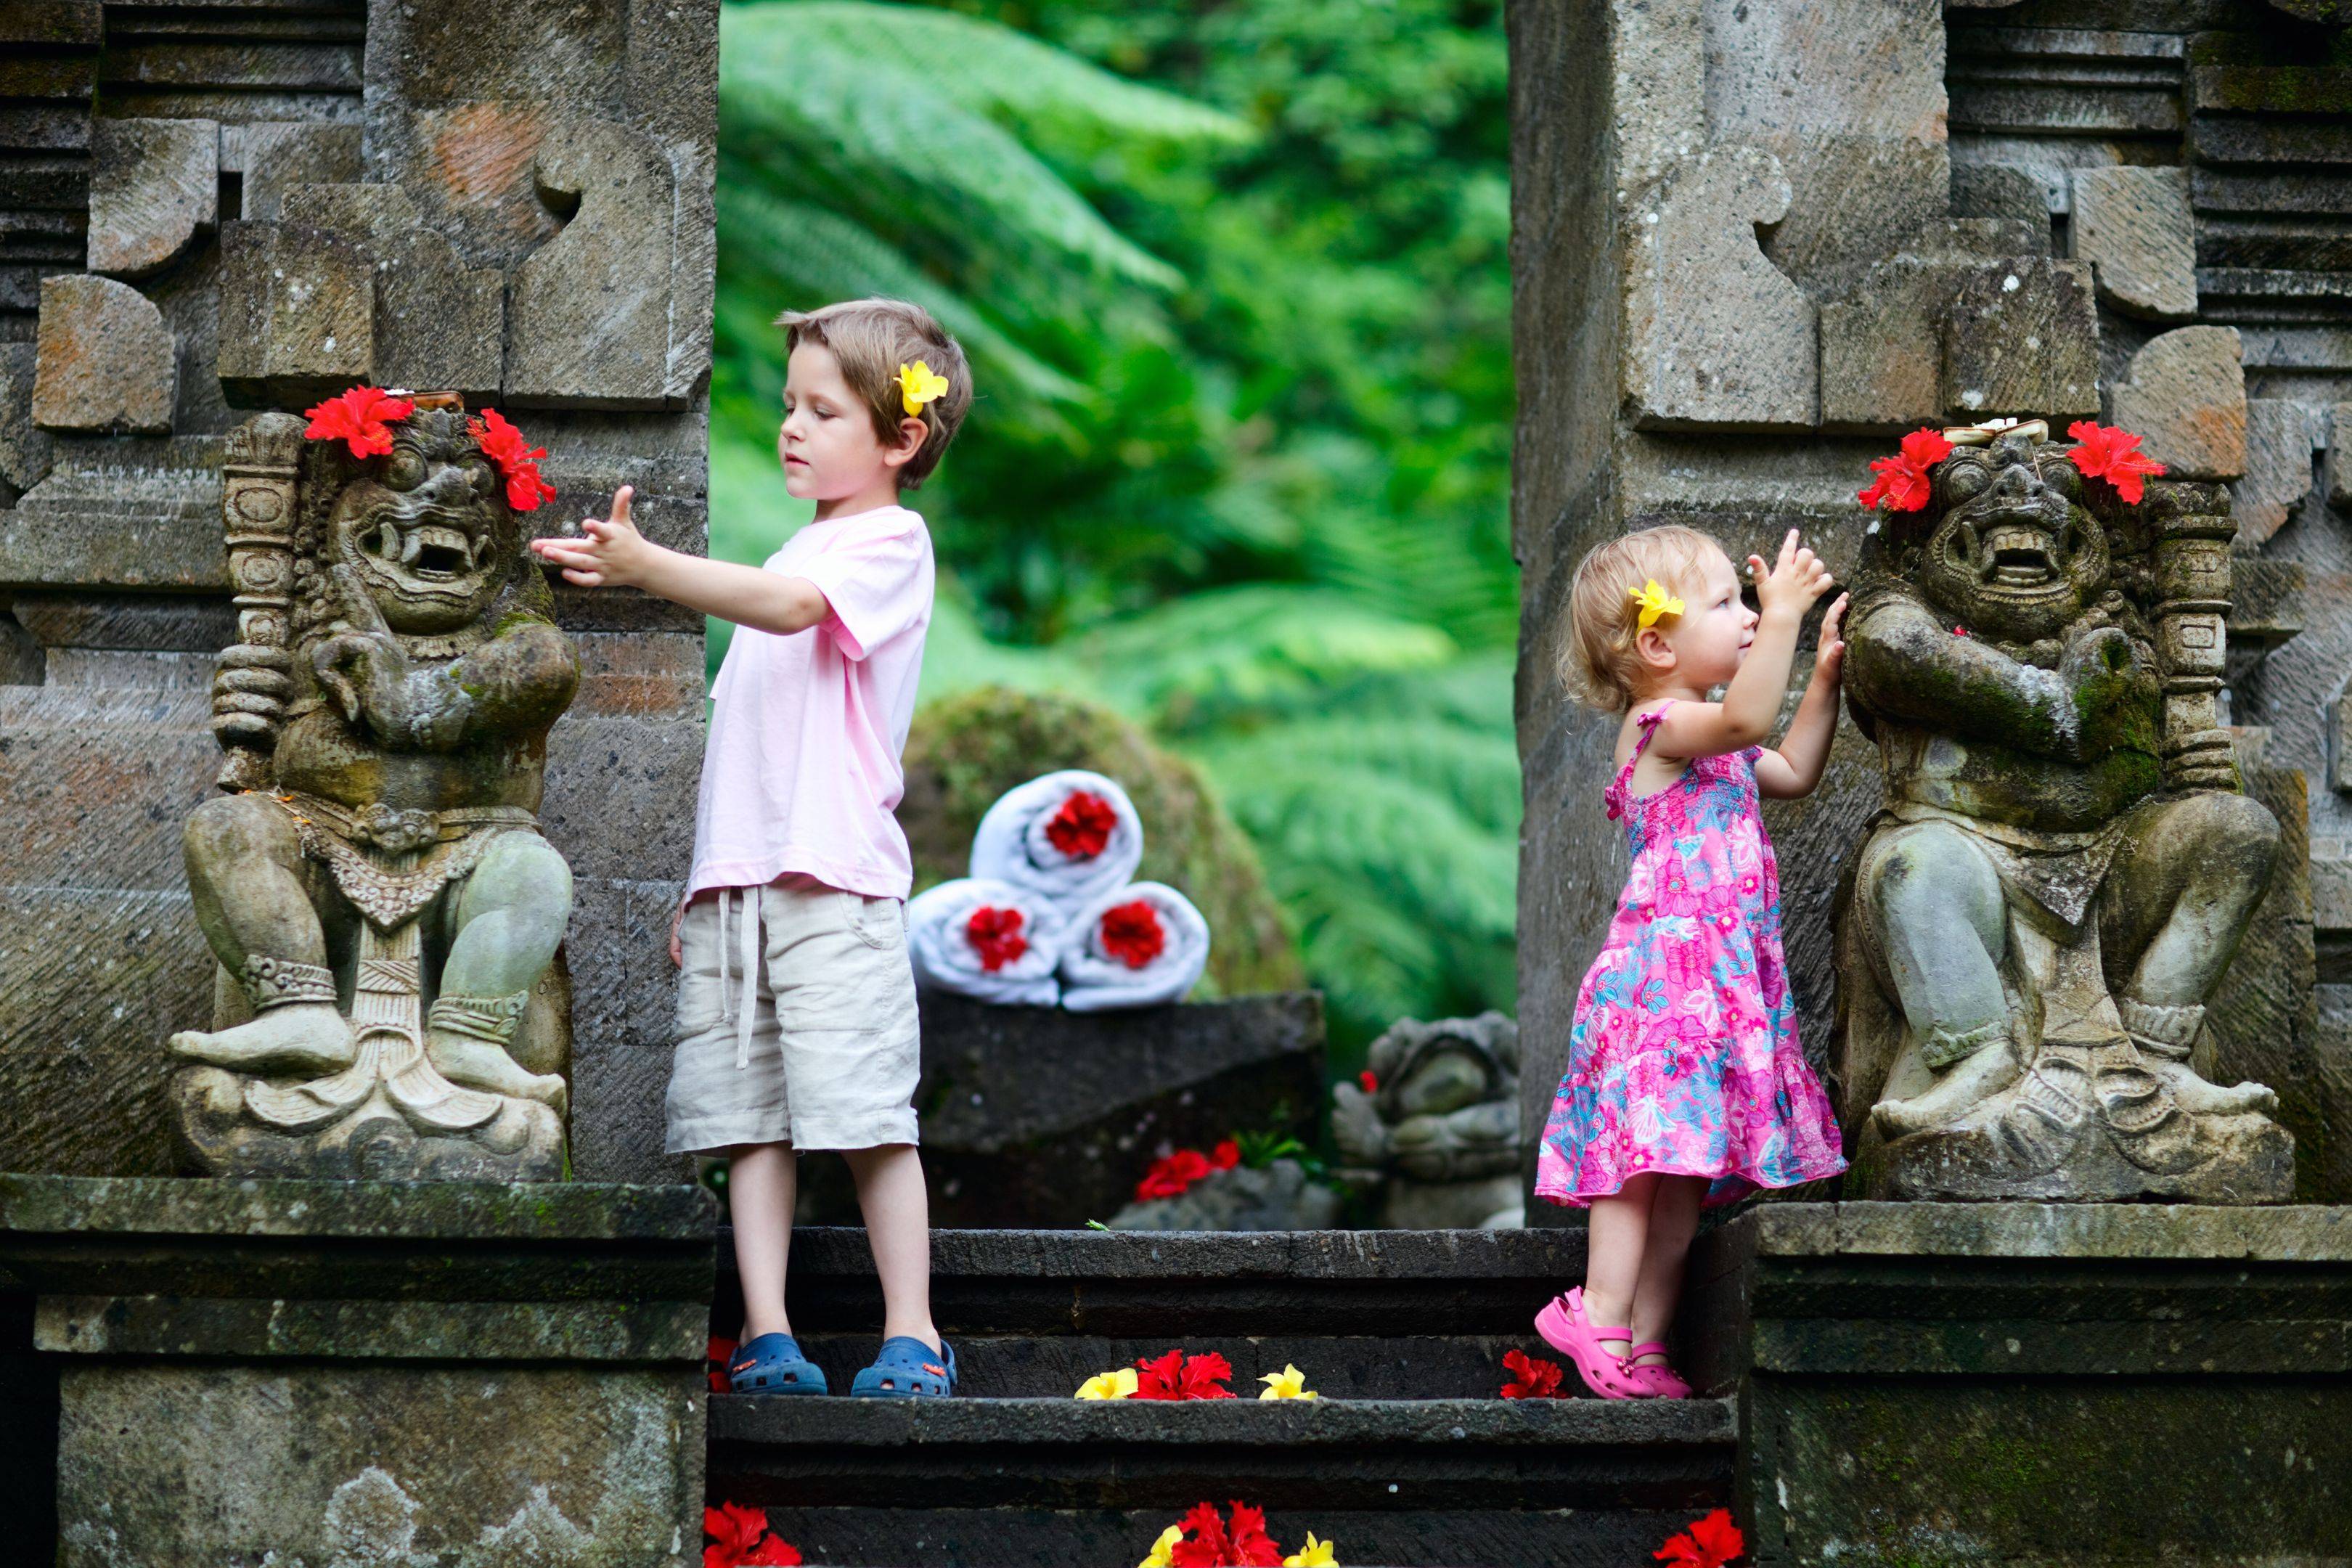 Ontdek Bali met jonge kinderen - een leuke en actieve reis